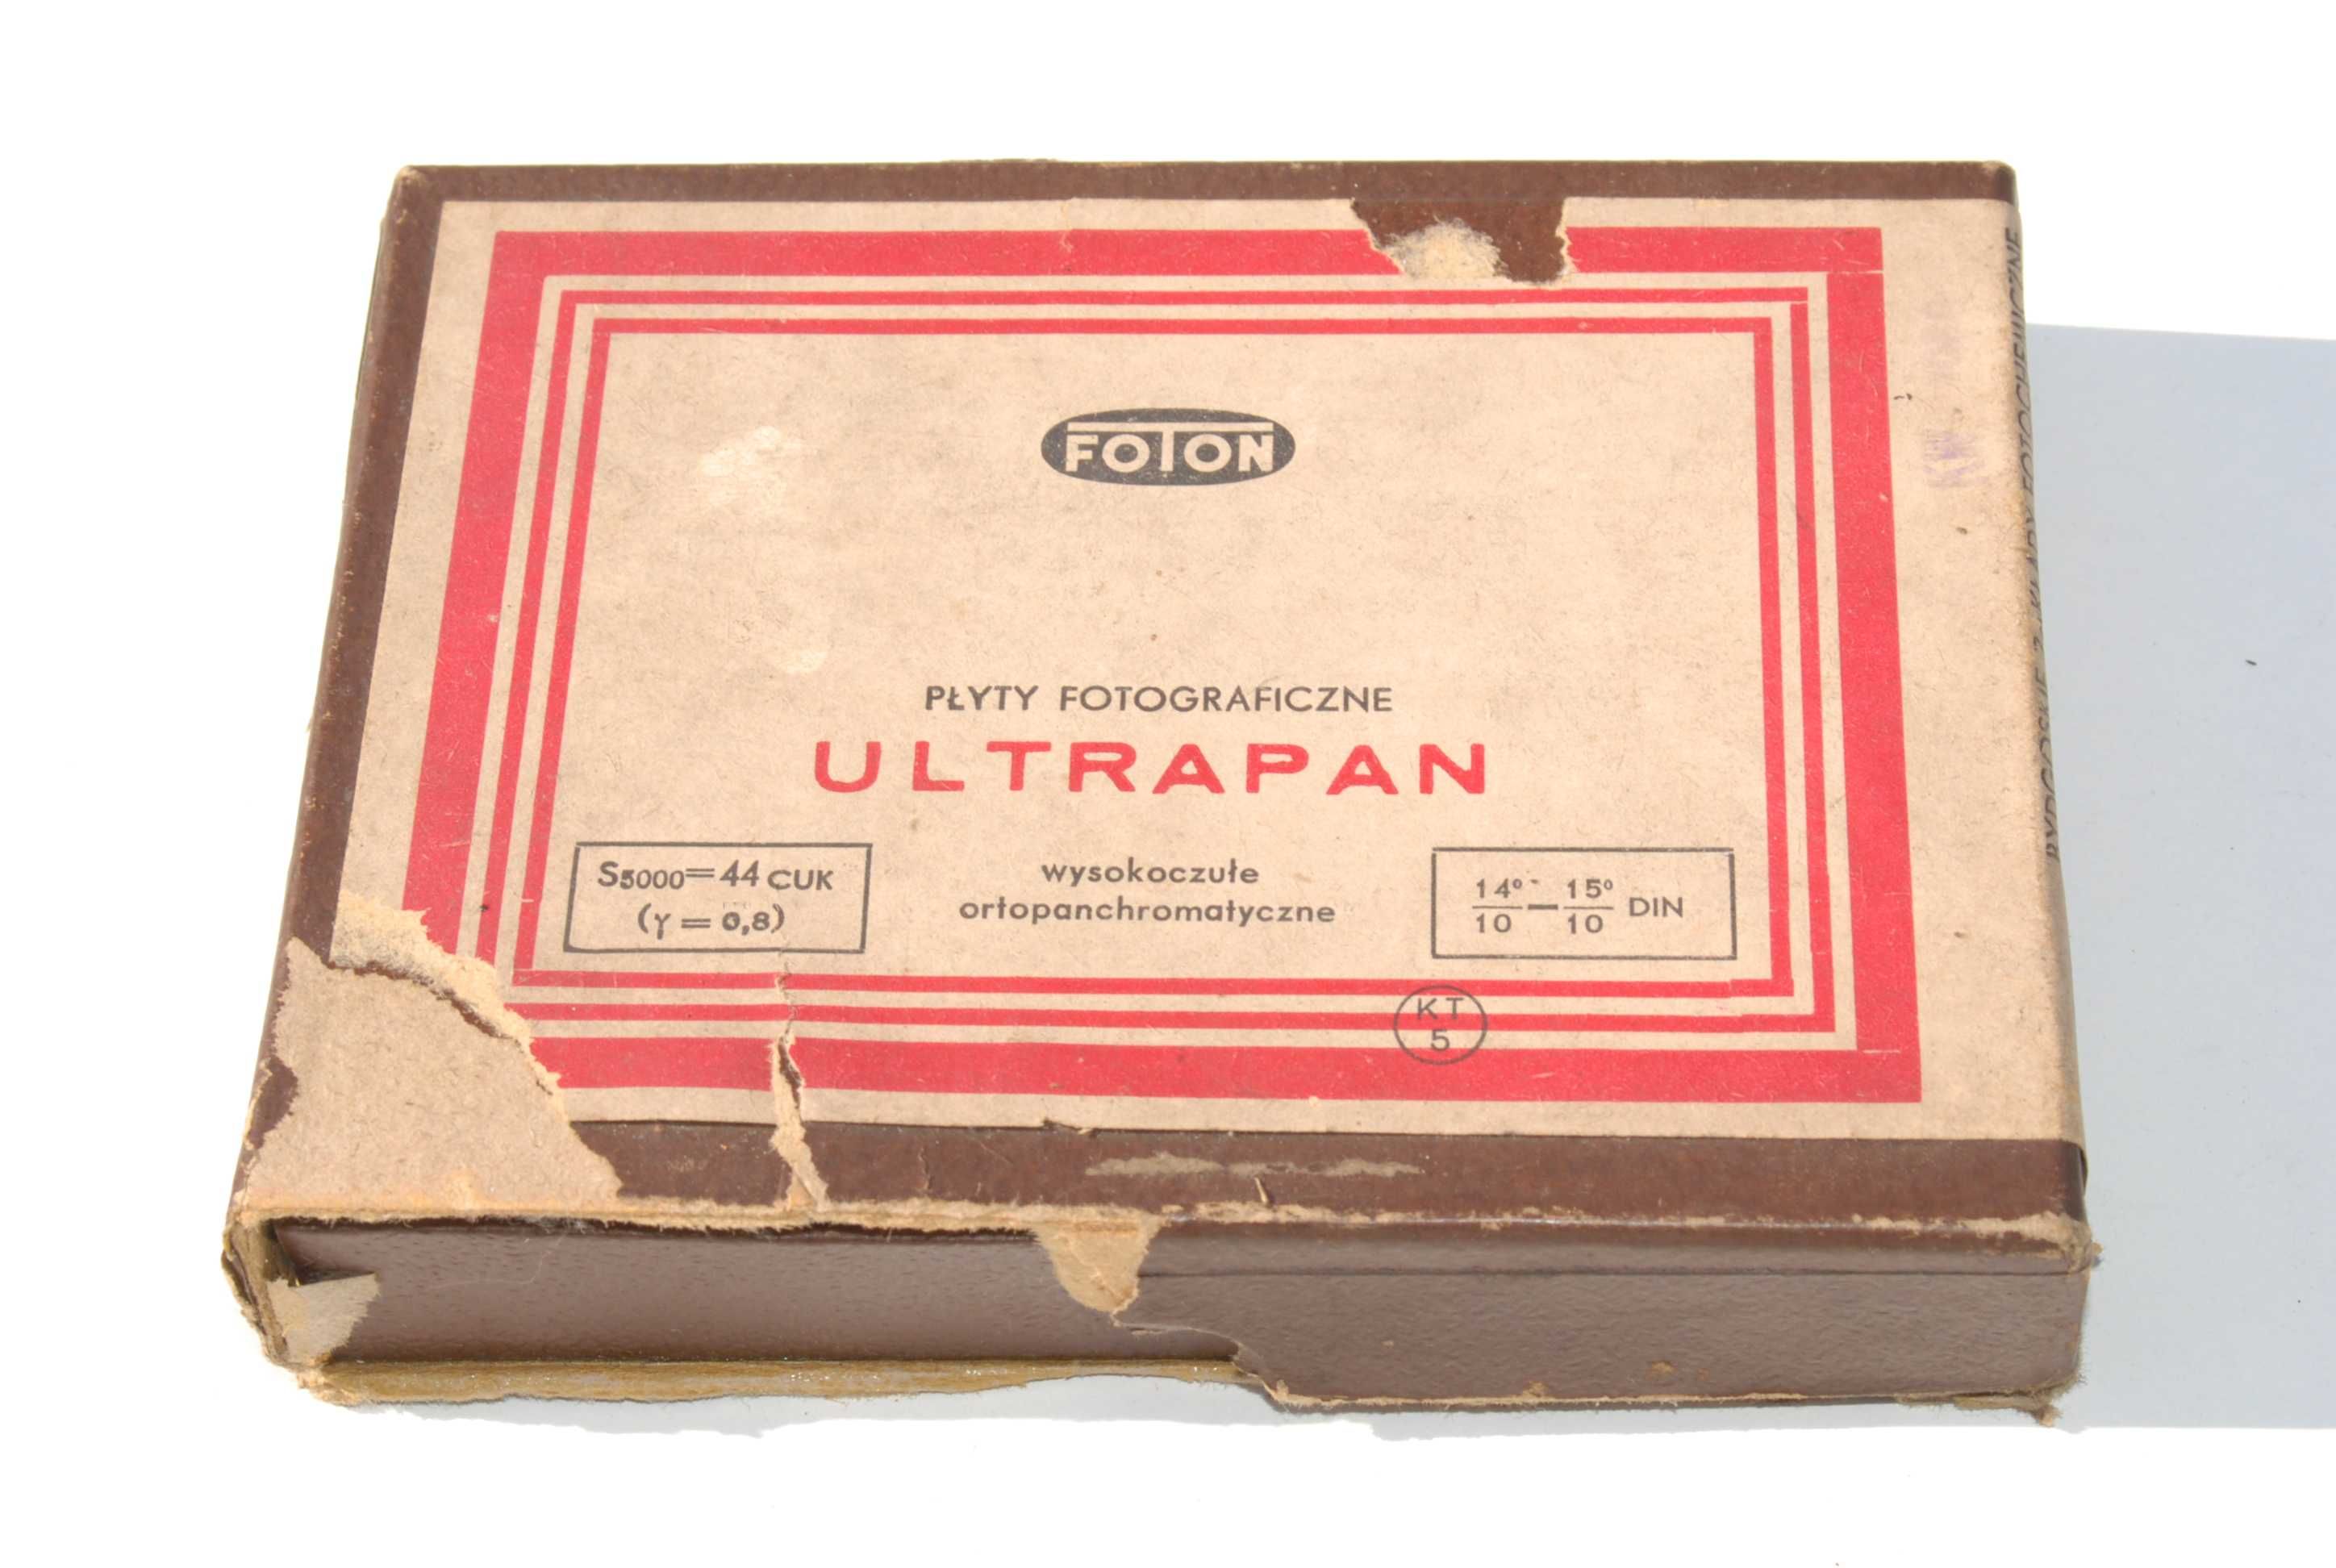 Stare FOTON płyty fotograficzne ULTRAPAN 9x12